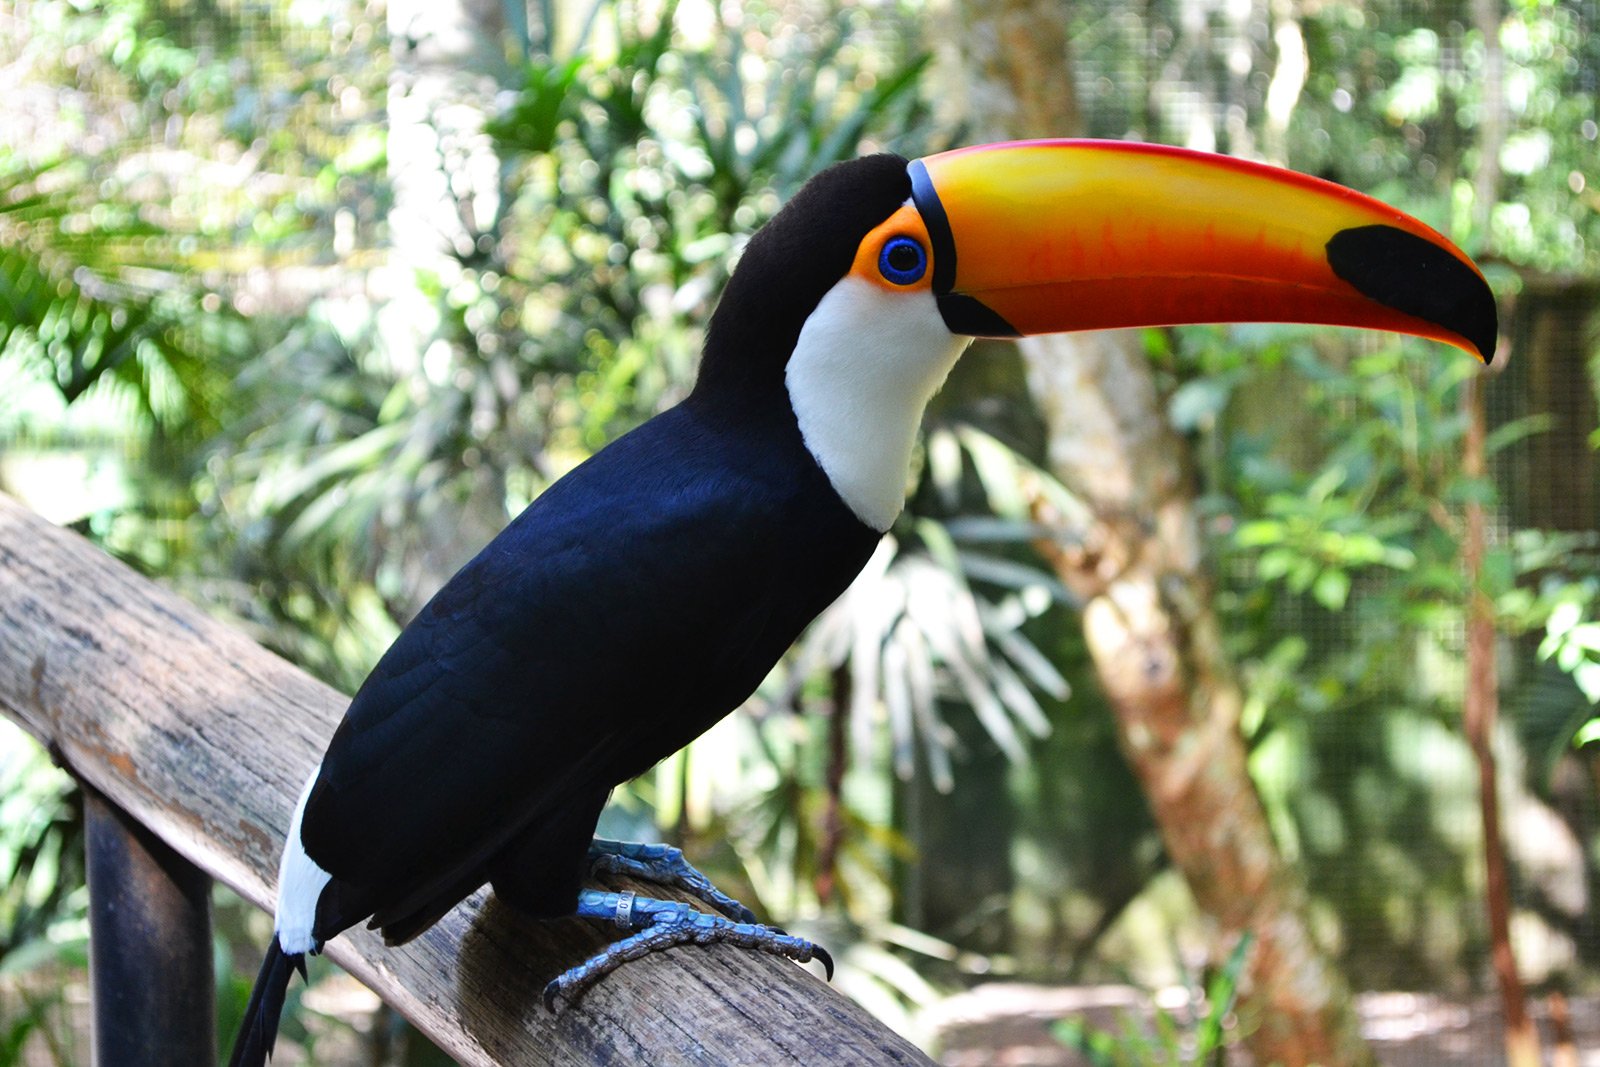 How to see the toucan in Rio de Janeiro